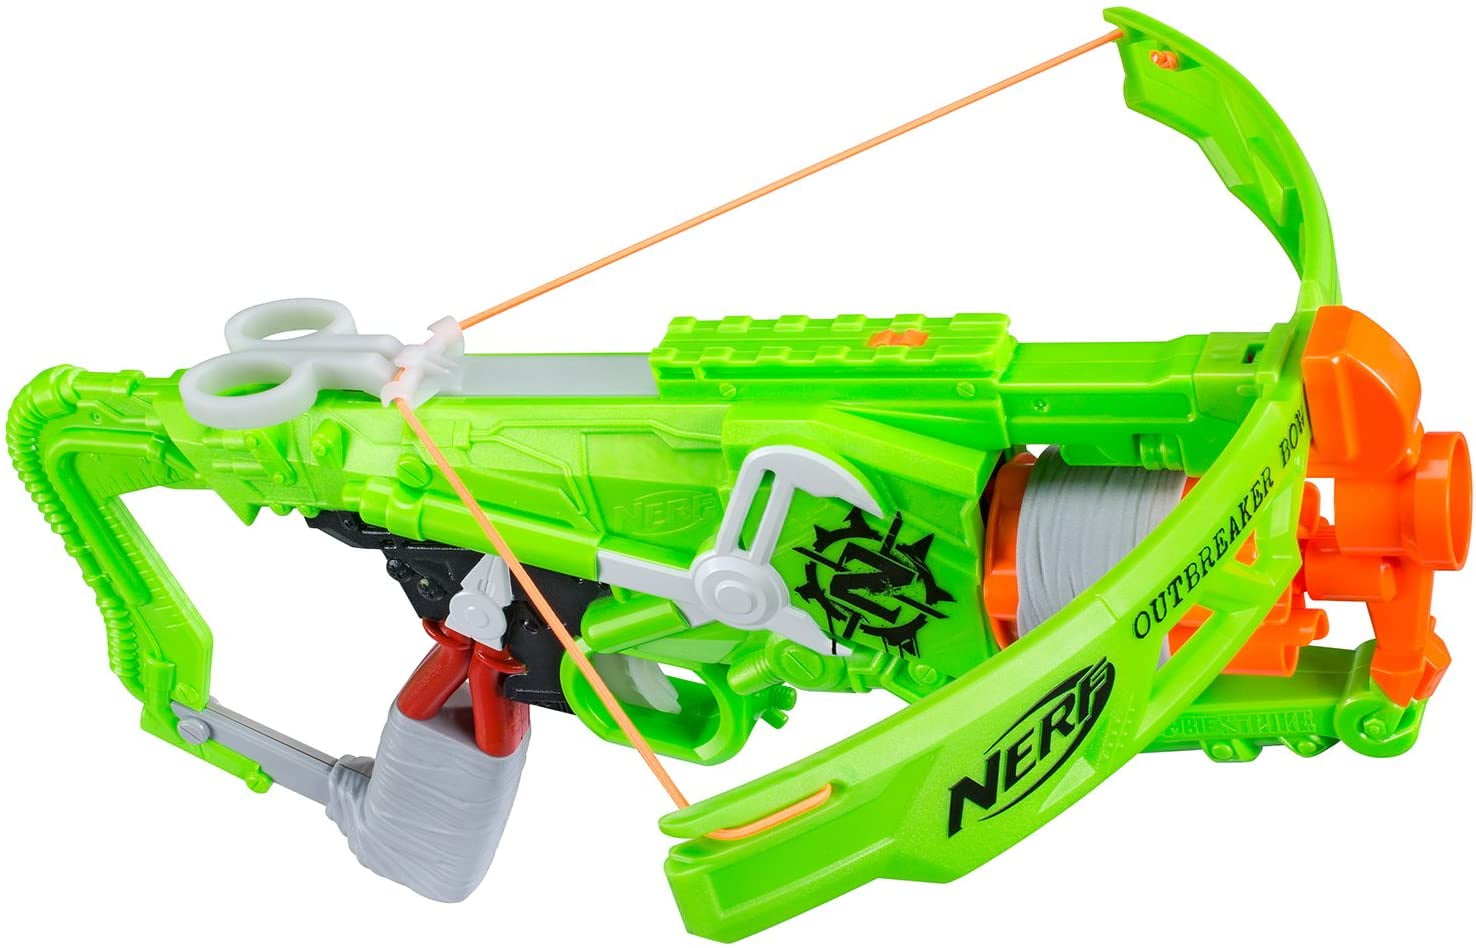 Kids Nerf Toy Crossbow Nerf Zombie Strike Dreadbolt Outdoor w/5 Arrows NEW